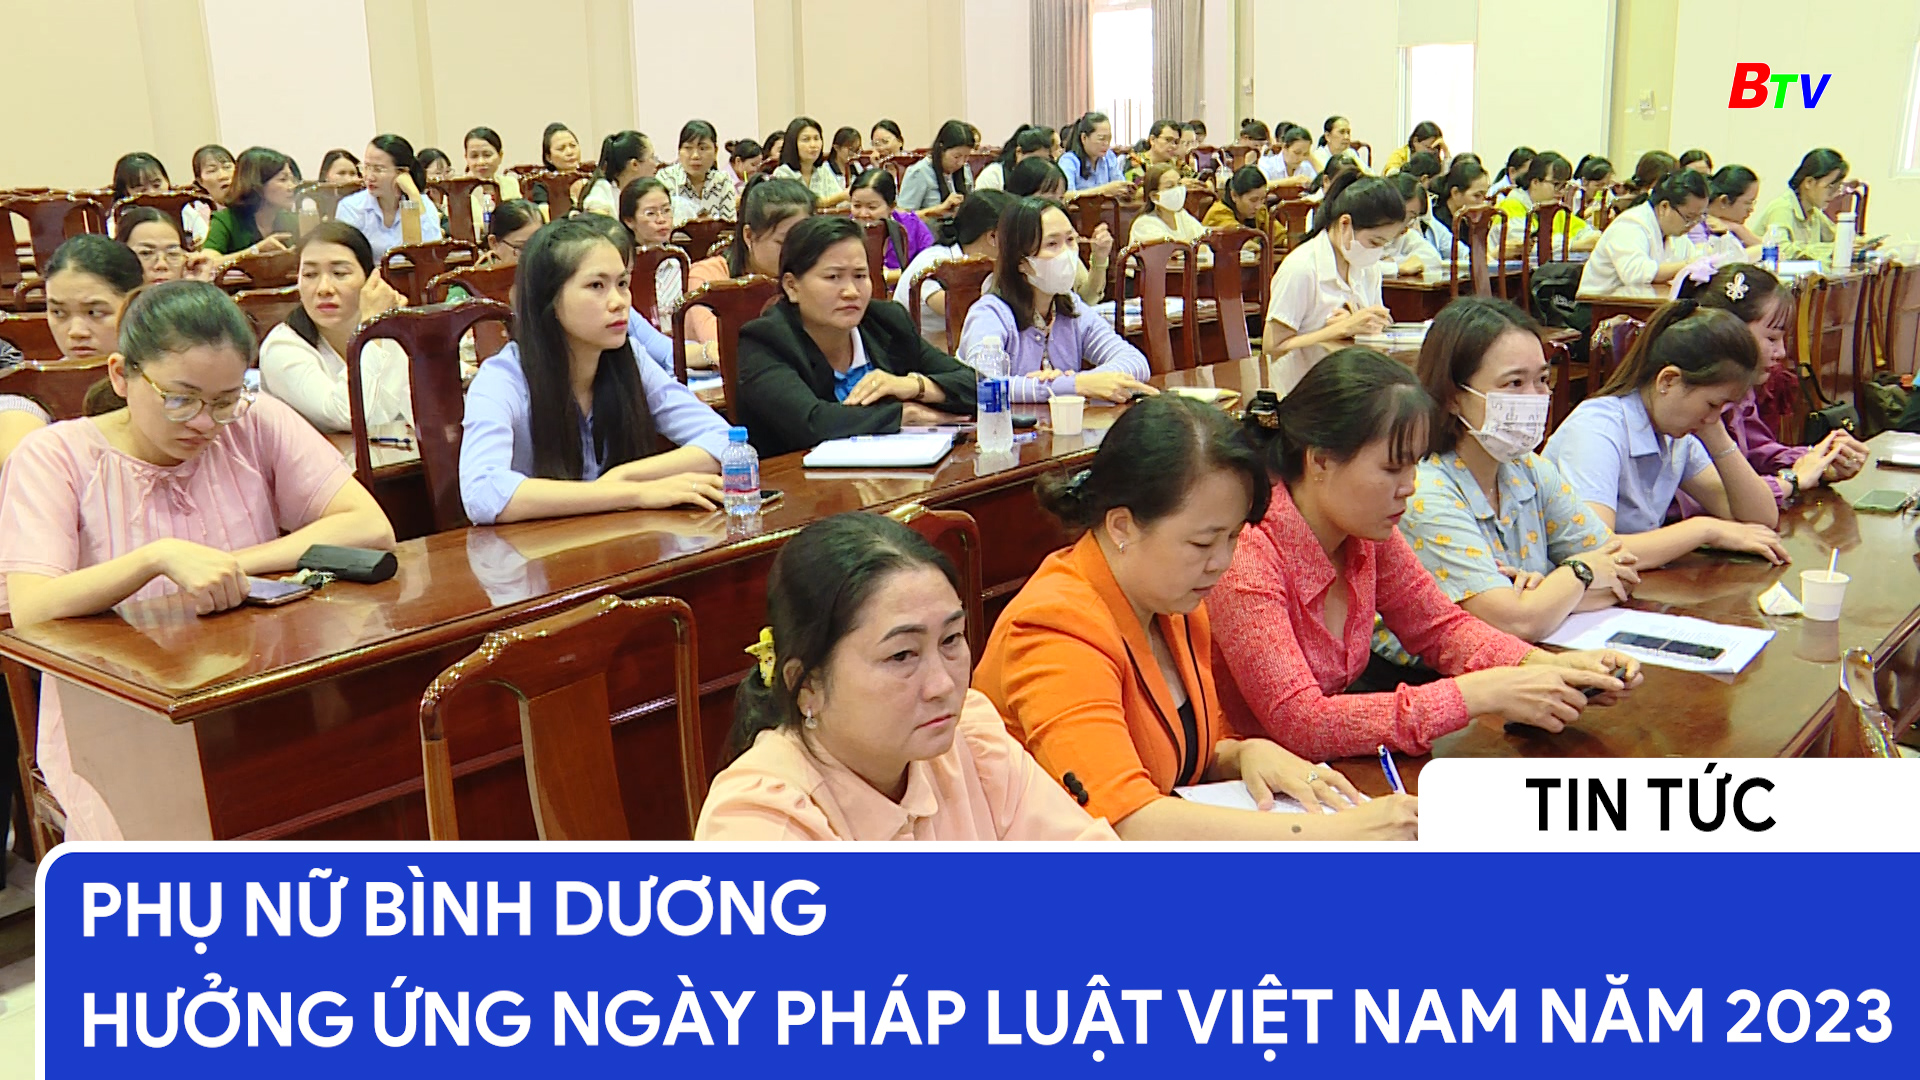 Phụ nữ Bình Dương hưởng ứng ngày pháp luật Việt Nam năm 2023